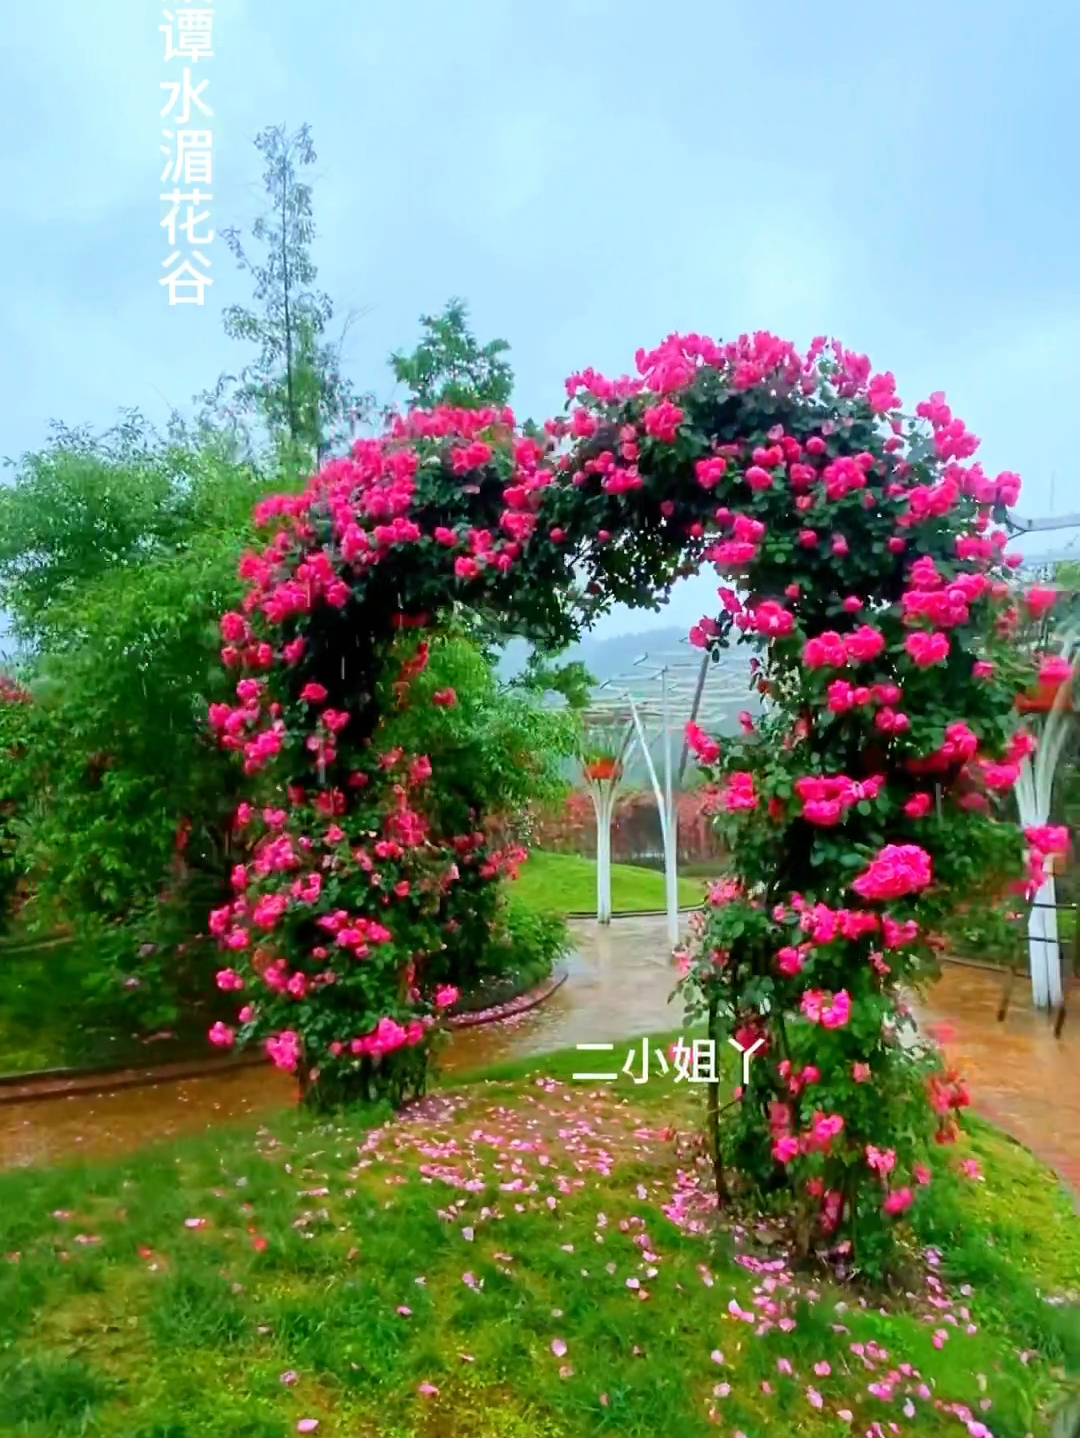 风很温柔，花很浪漫，这里是贵州湄潭水湄花谷，今年你想和谁一起去呢 #水湄花谷 #遵义湄潭